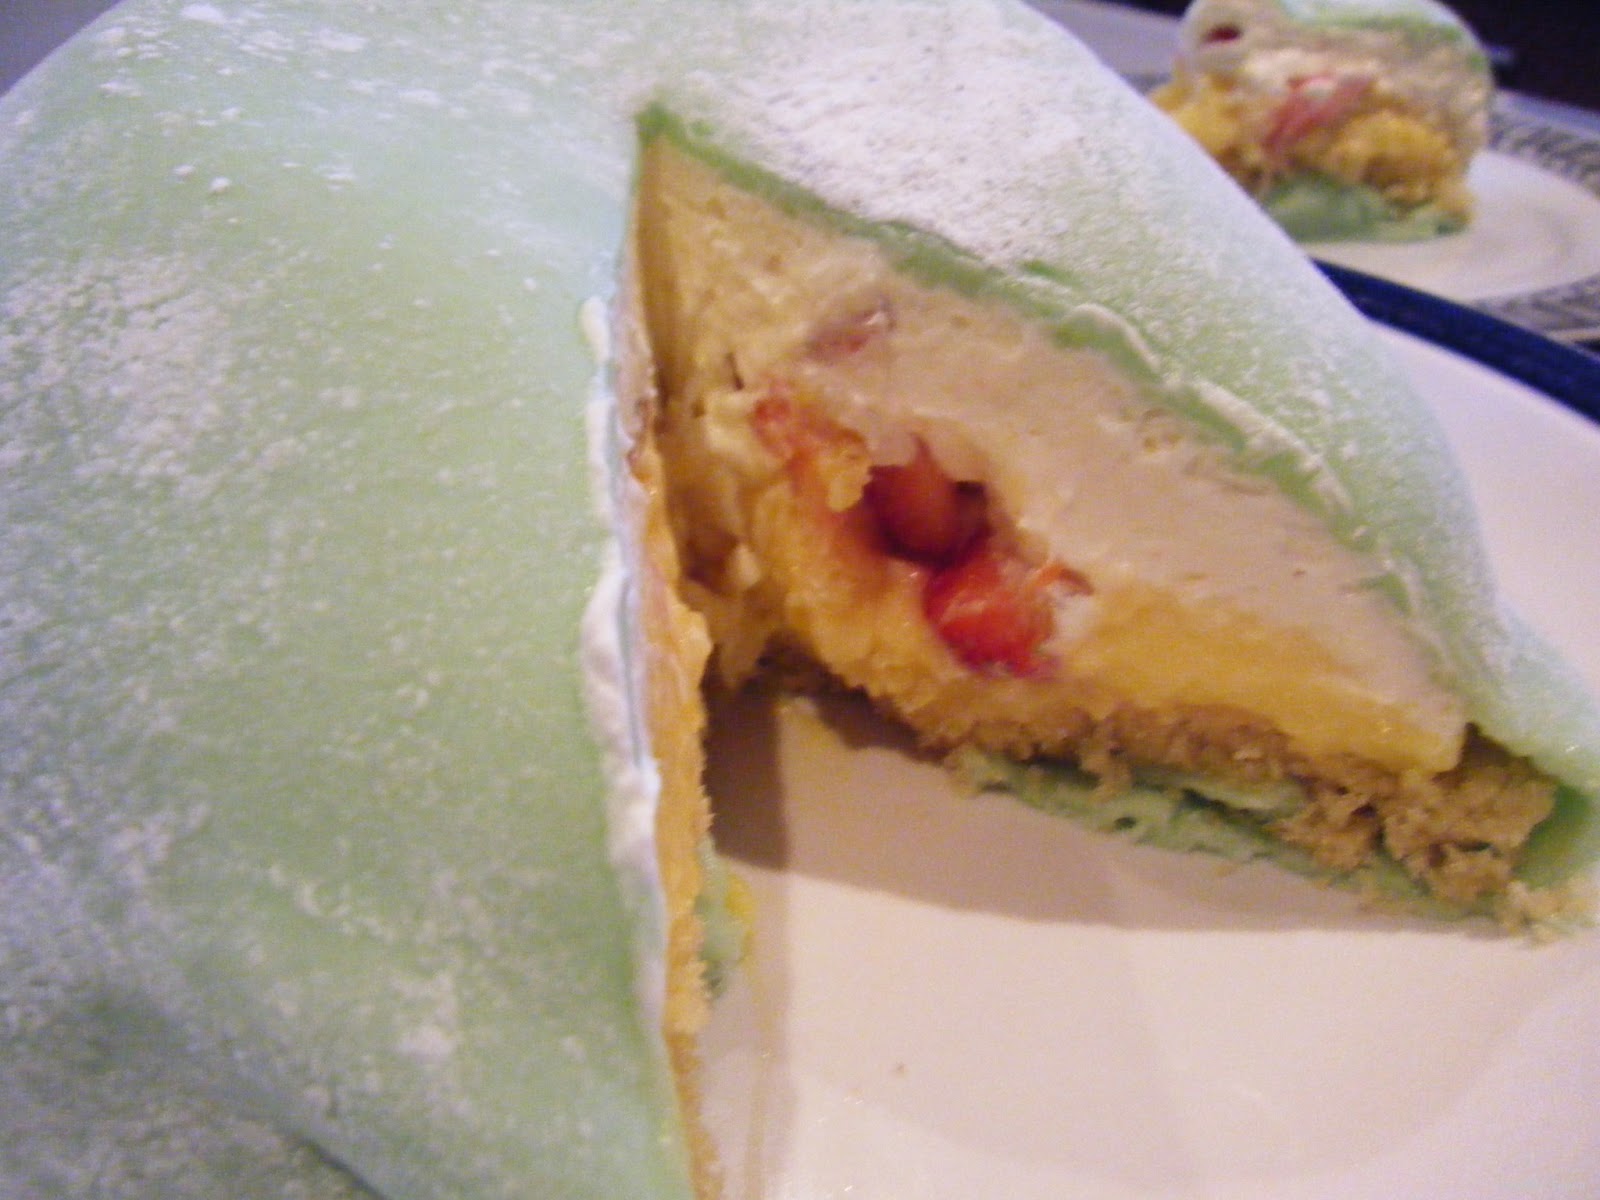 Top more than 70 green dome cake super hot  indaotaonec